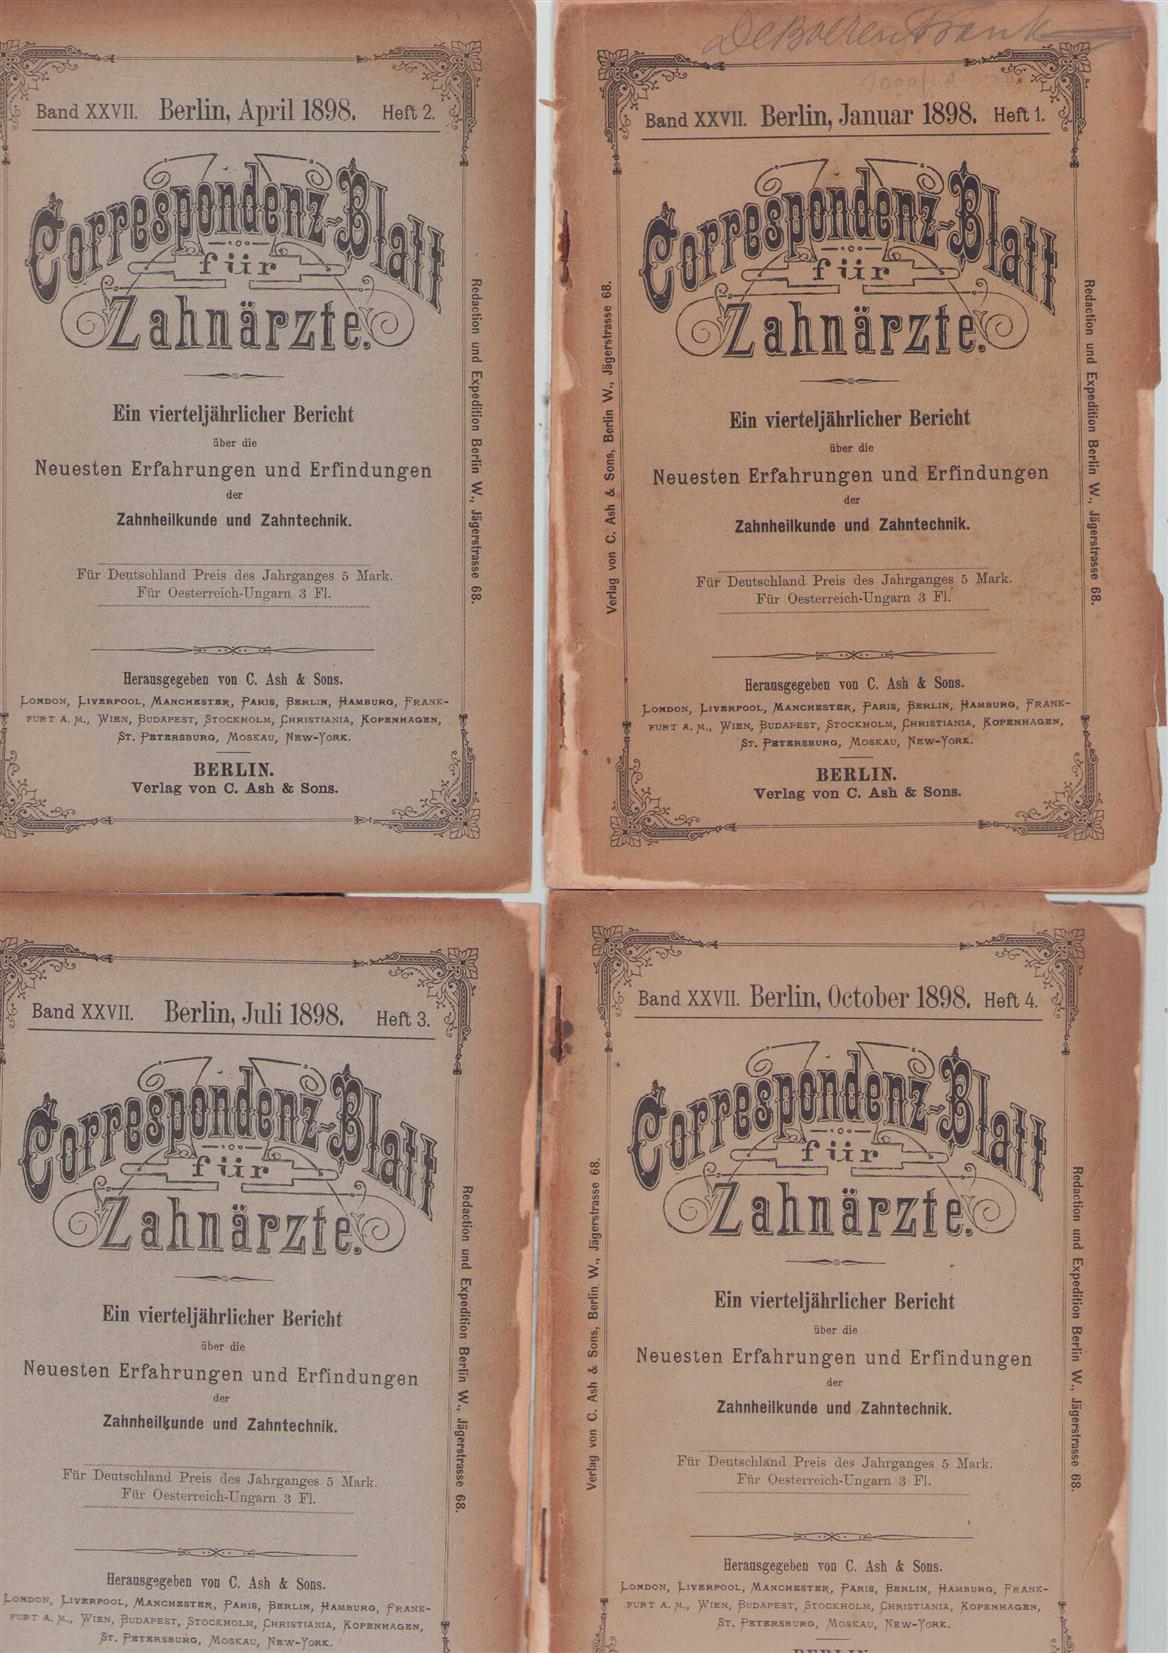 UNKNOWN AUTHOR - CORRESPONDENZ-BLATT FUR ZAHNARZTE, 1898,: ein vierteljahrlicher bericht uber die neuesten... erfahrungen und erfindungen der zahnheilkunde und.Zahntecnik